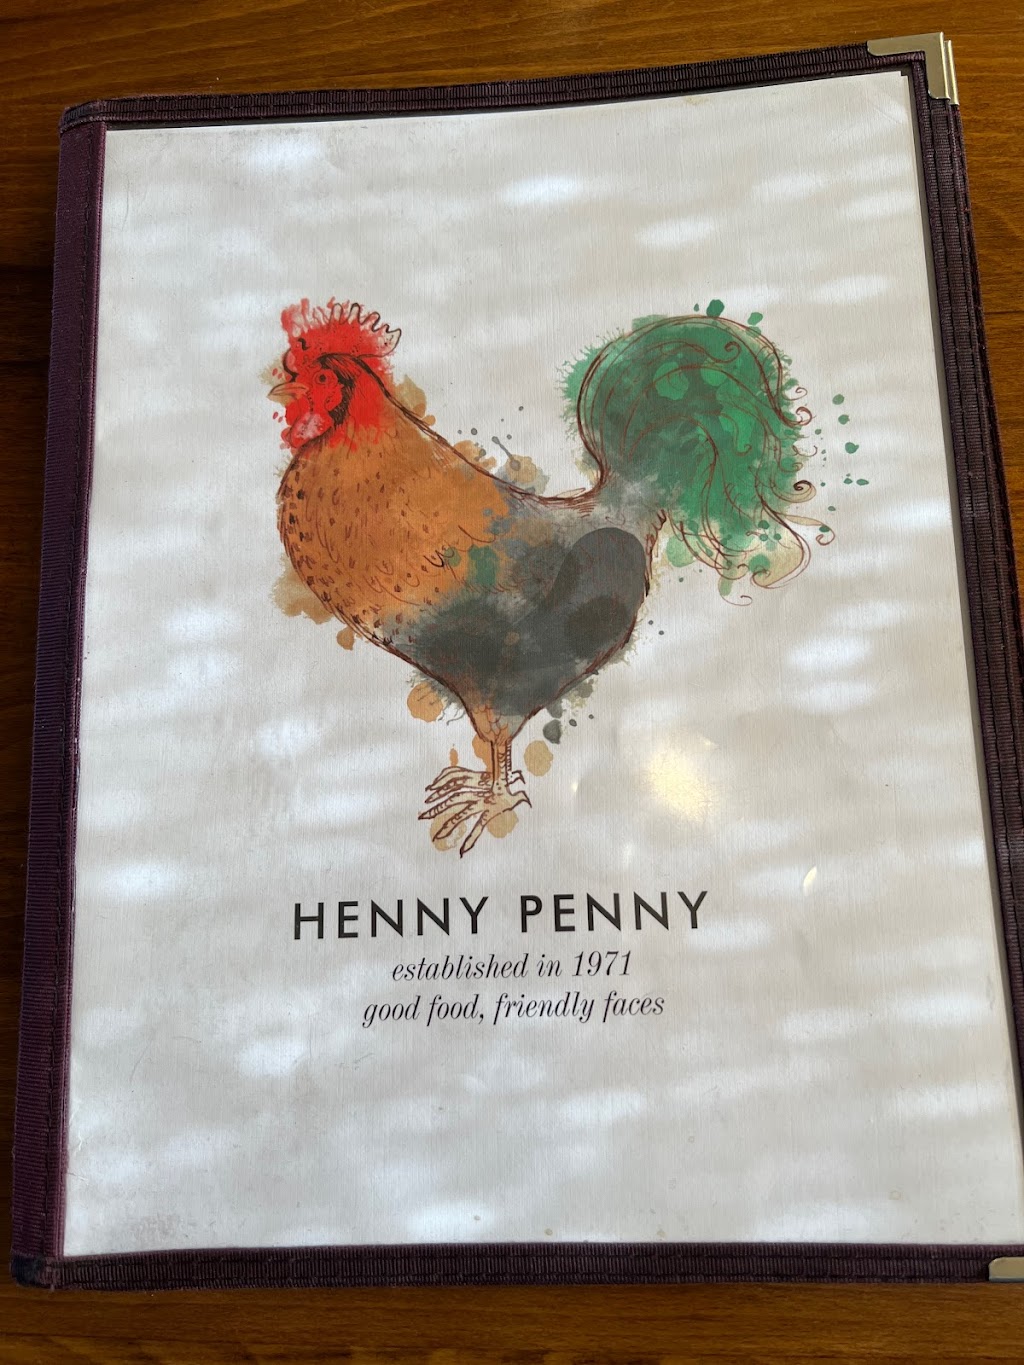 Petes Henny Penny Restaurant | 4995 Petaluma Blvd N, Petaluma, CA 94952 | Phone: (707) 763-0459